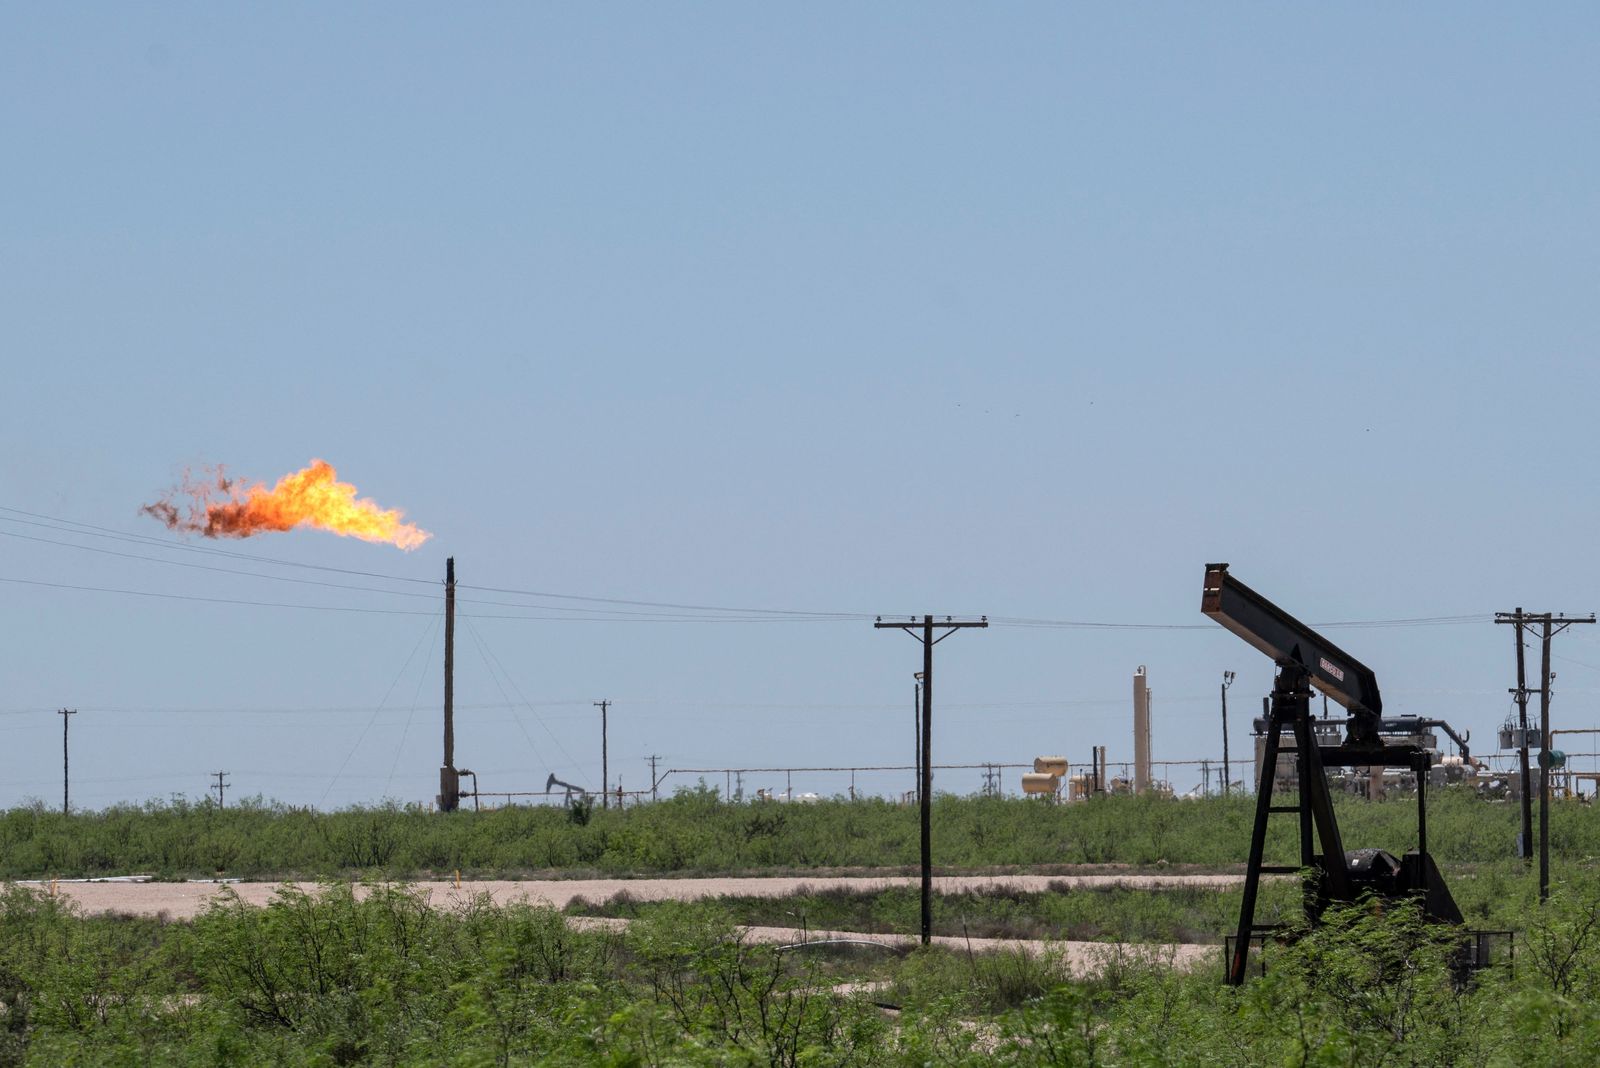 خافير بلاس: شركات النفط الكبرى يجب ألا تقود التحول إلى الطاقة الخضراء